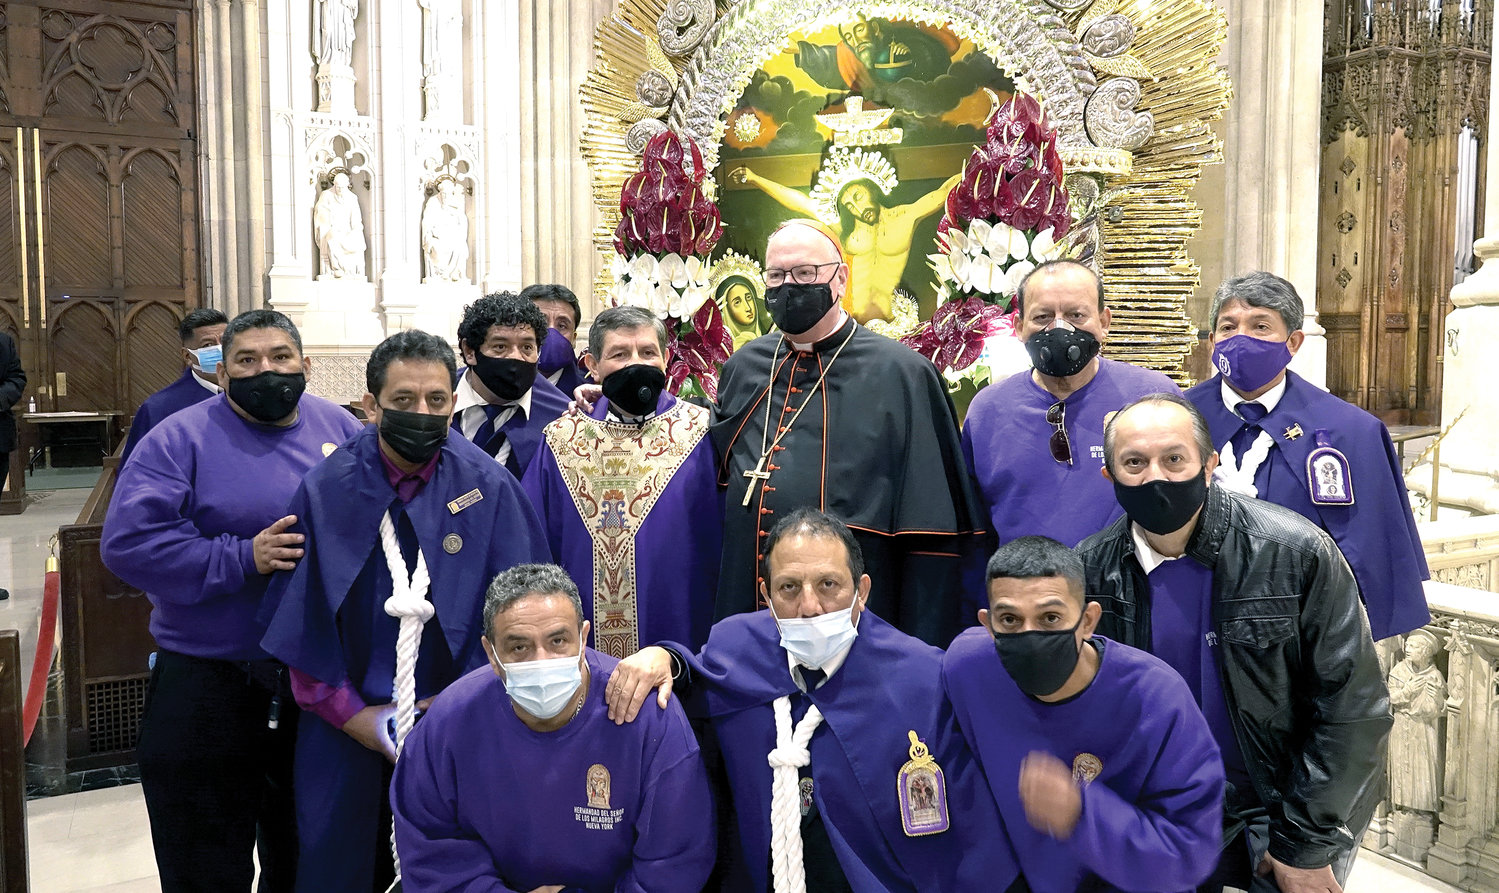 Señor De Los Milagros | Catholic New York